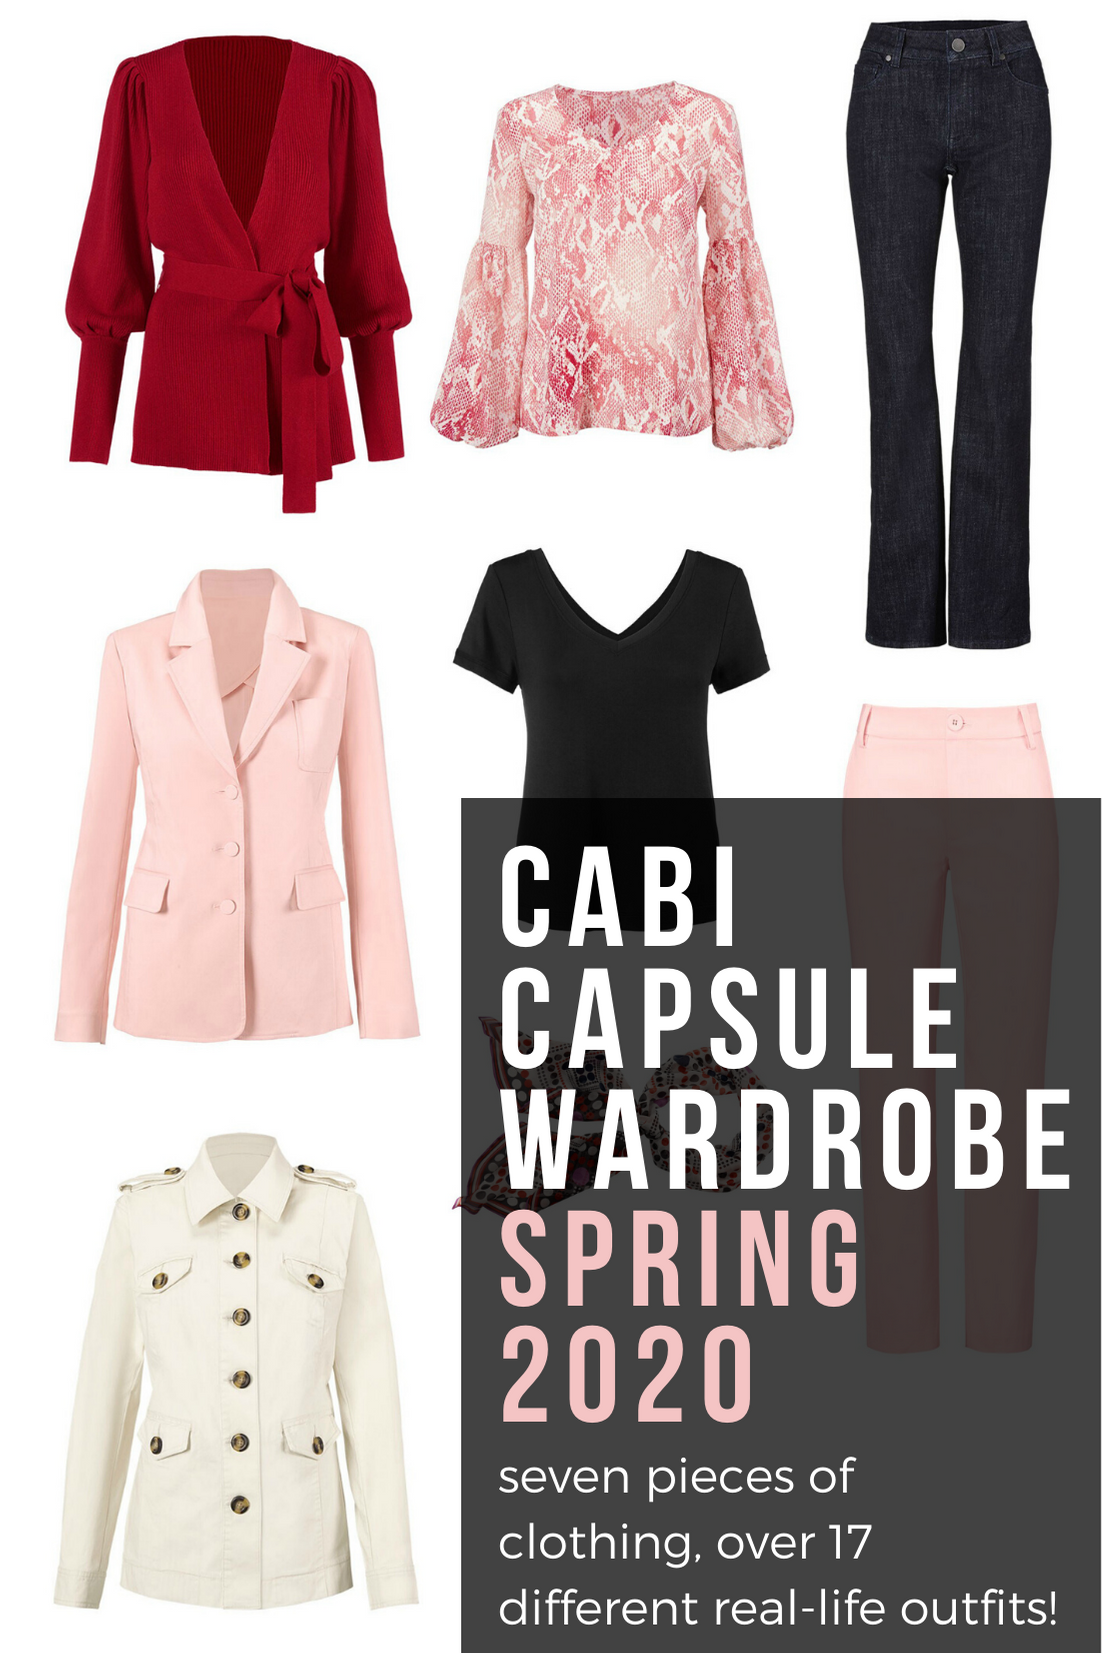 Cabi Capsule Wardrobe for Spring 2020 - Wardrobe Oxygen